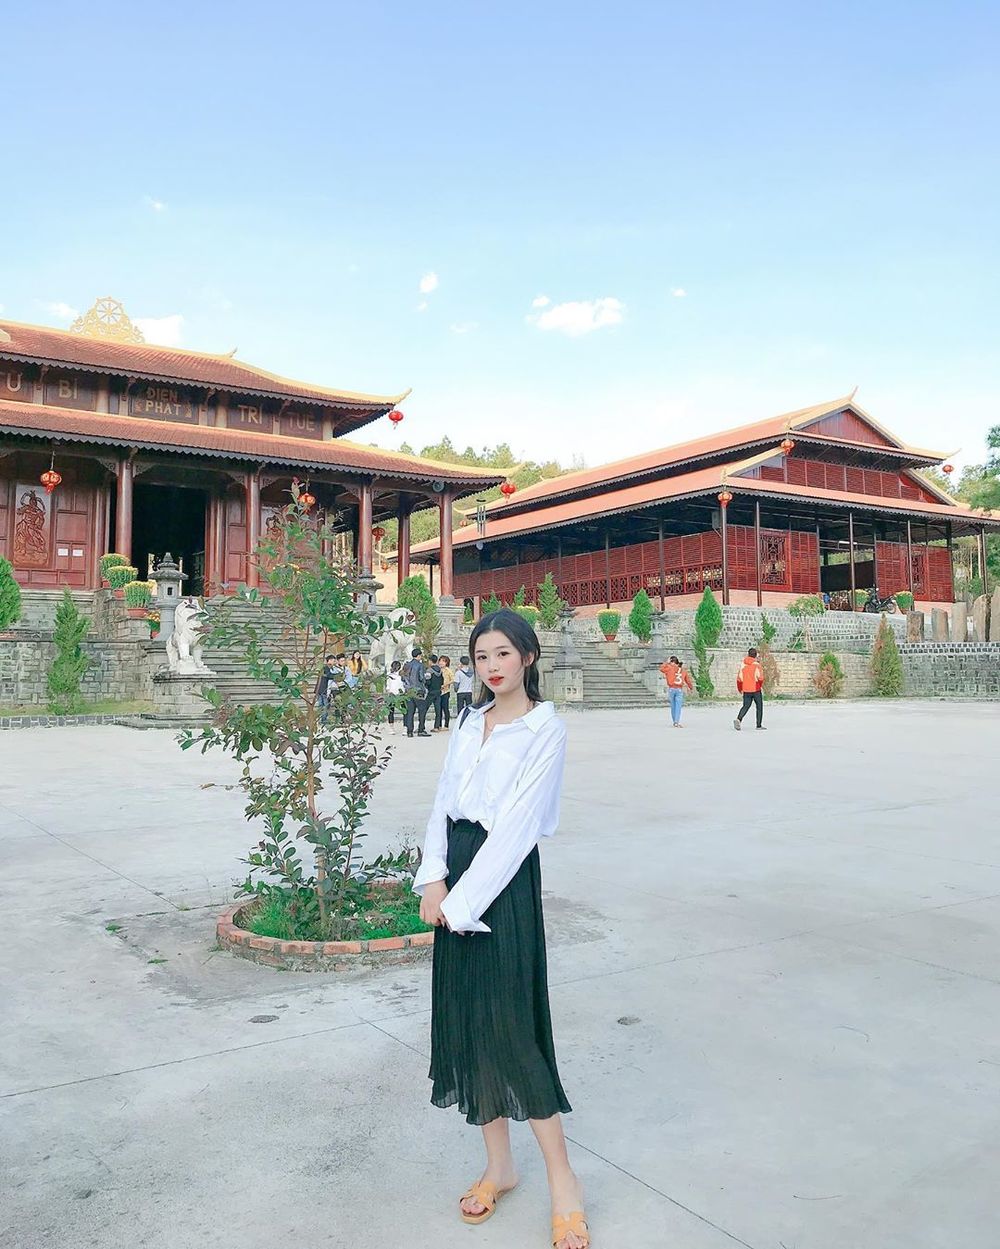  
Thiền viện trúc lâm Đạo Nguyên là nơi du lịch tâm linh nổi tiếng Đắk Nông. (Ảnh: Vyvy)